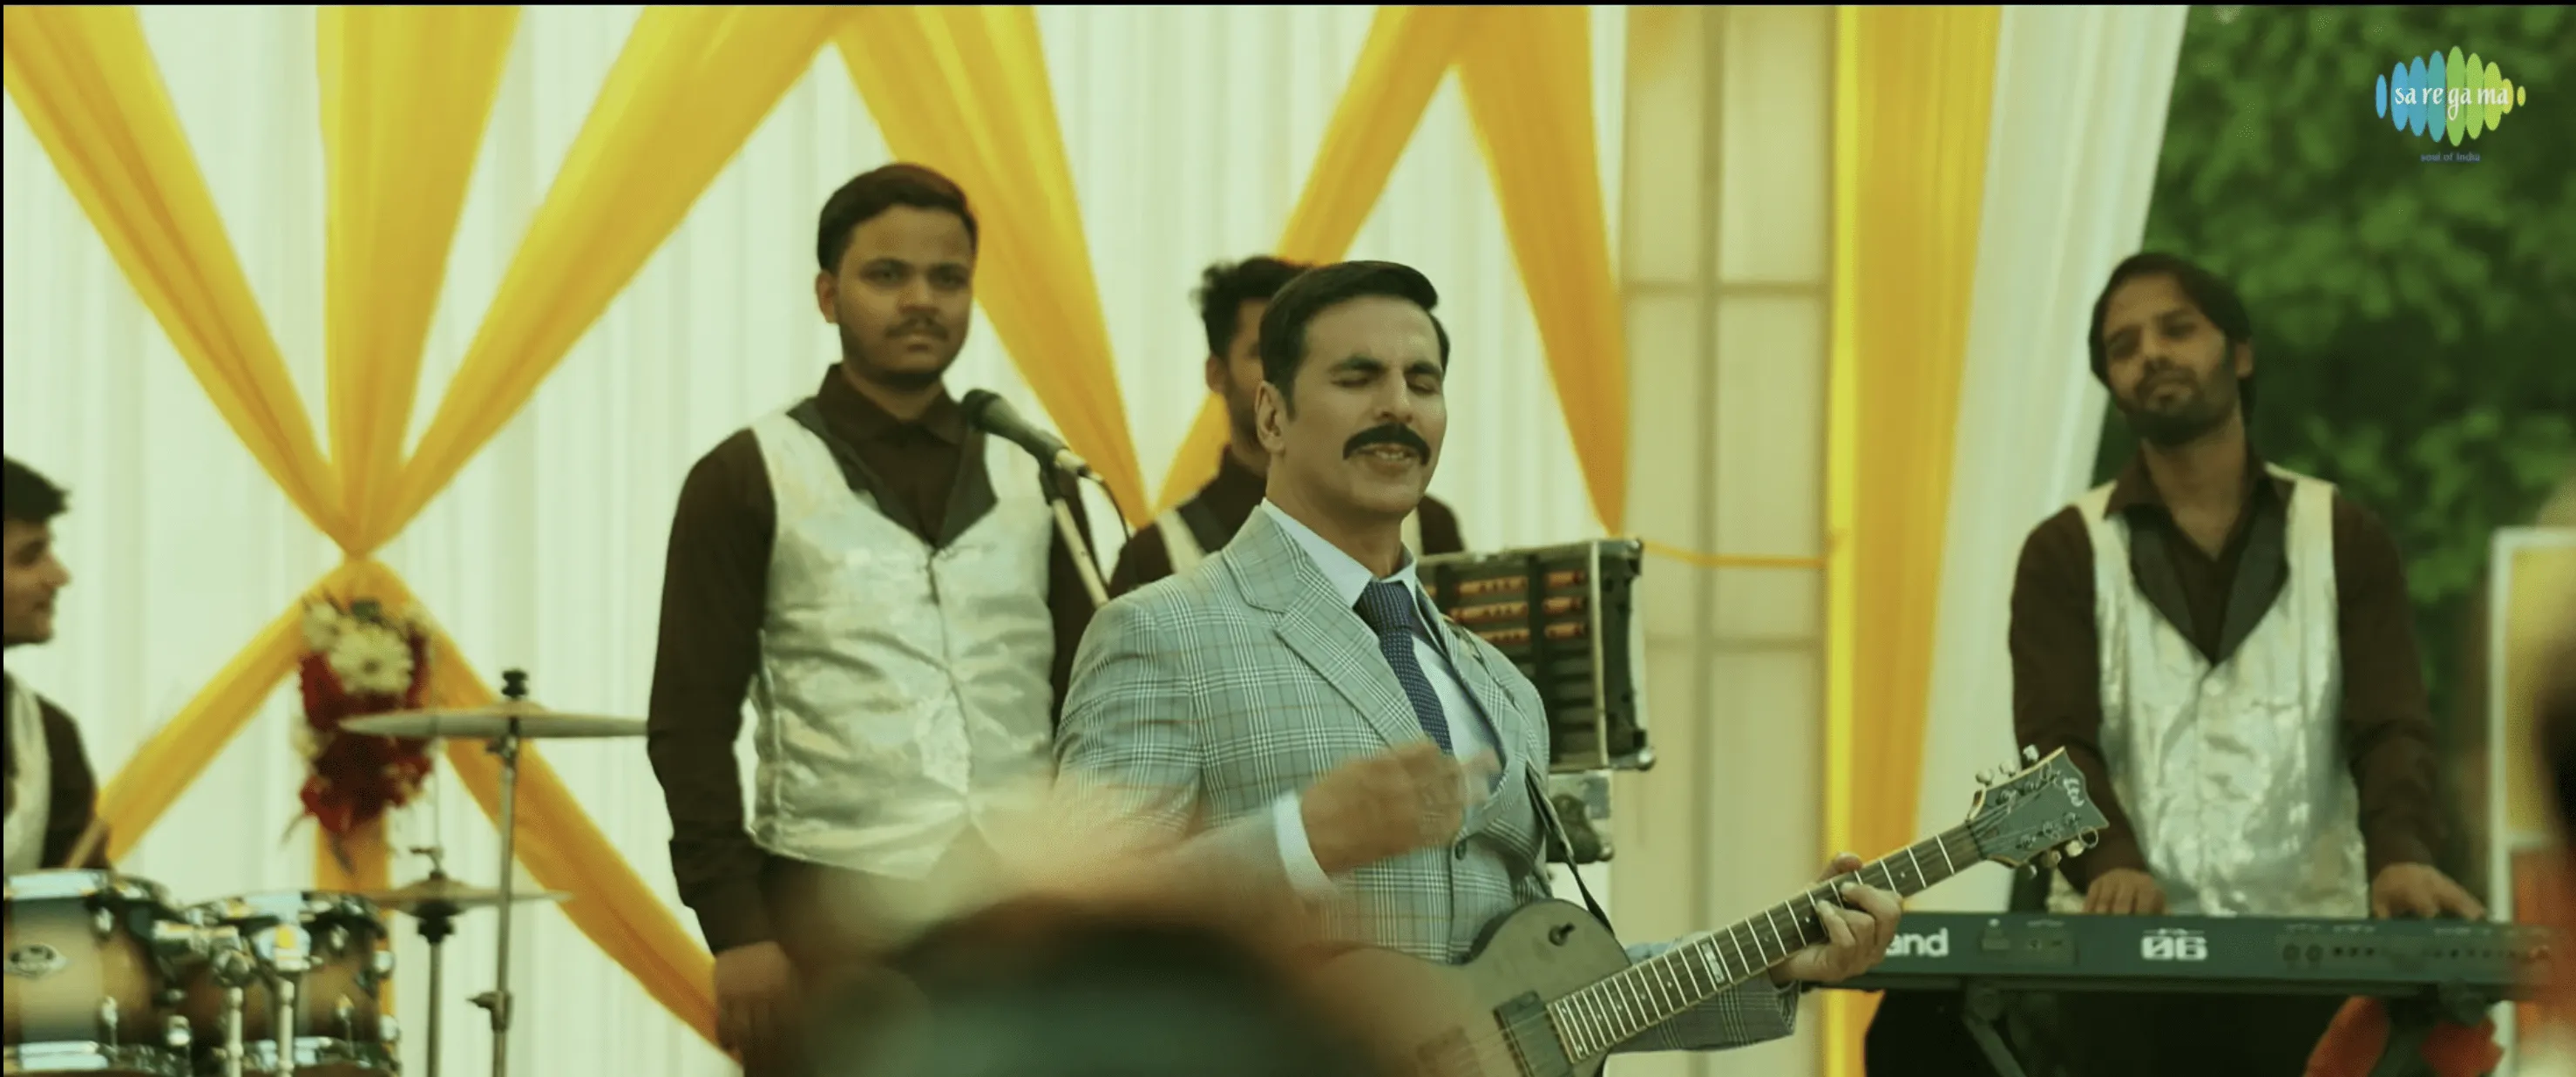 Marjaawaan Song Review: एक्शन स्टार अक्षय कुमार एक अनोखे रोमांटिक अंदाज़ में नज़र आए